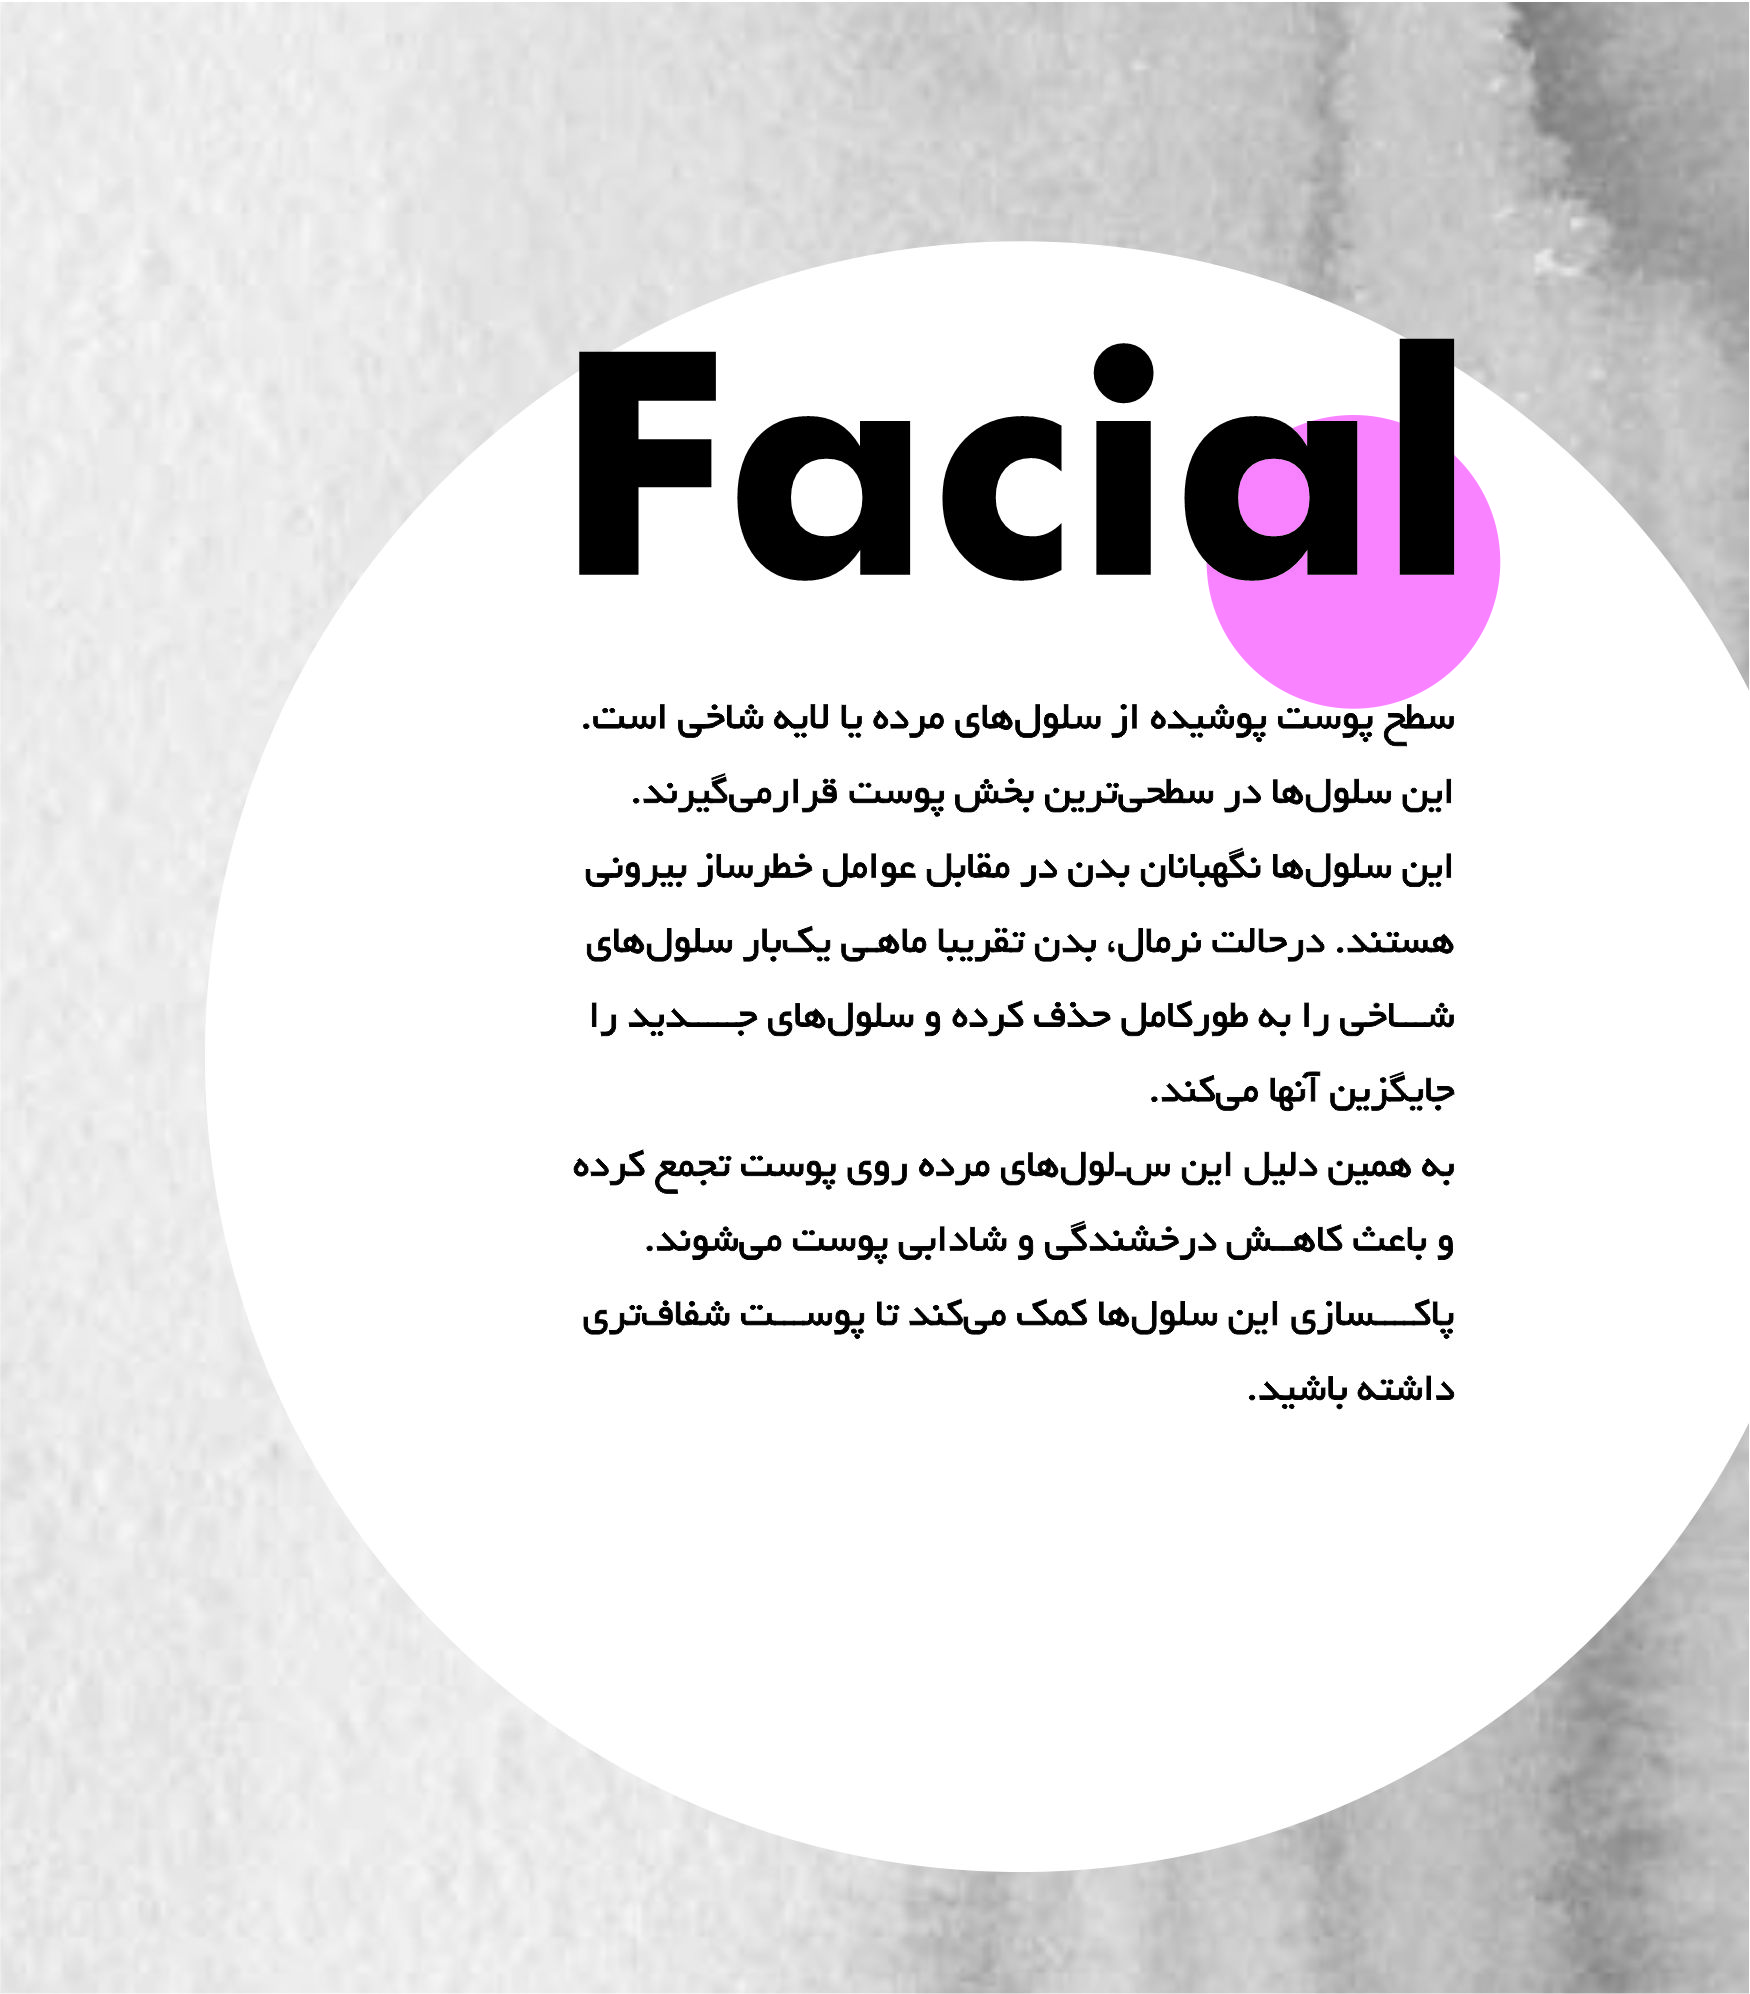 facial3